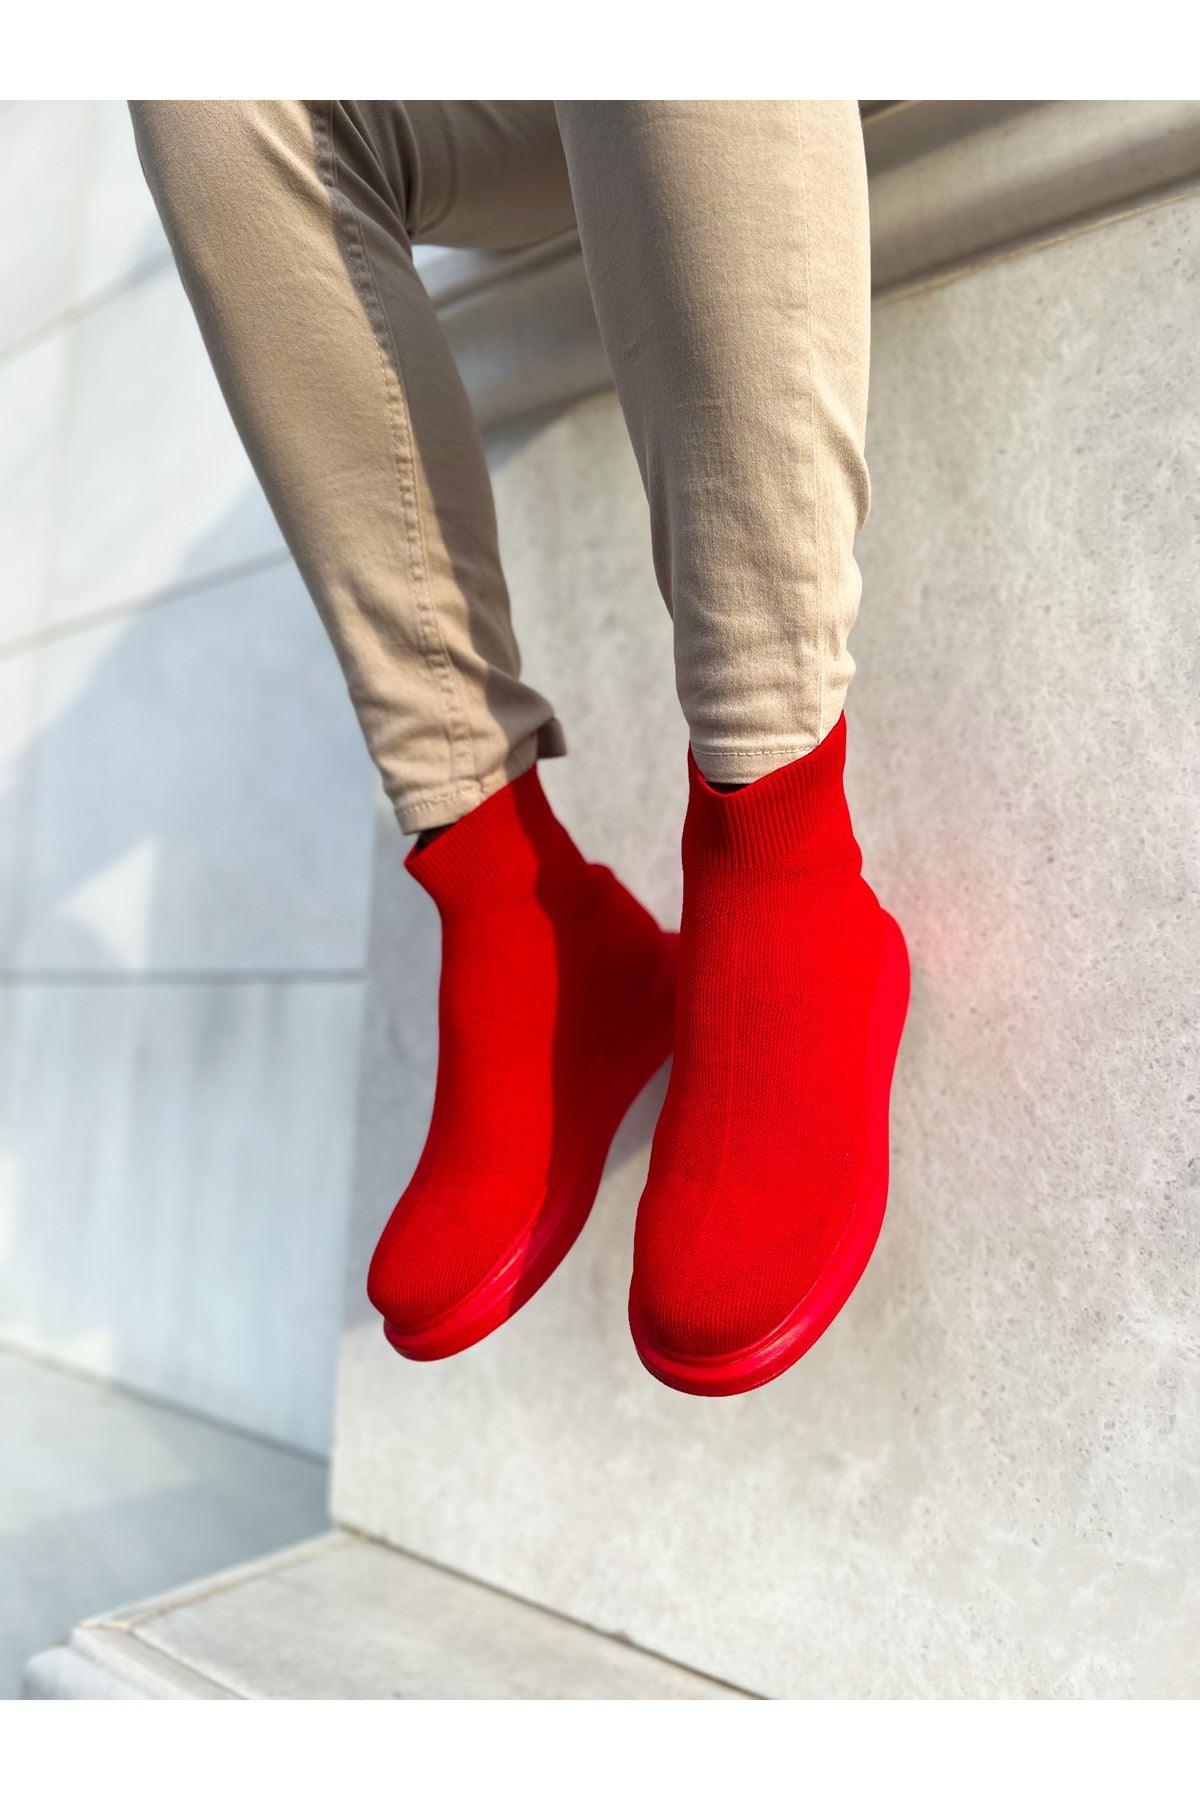 CH207 B.Knitwear RRT Men's Shoes sneakers boot RED - STREET MODE ™